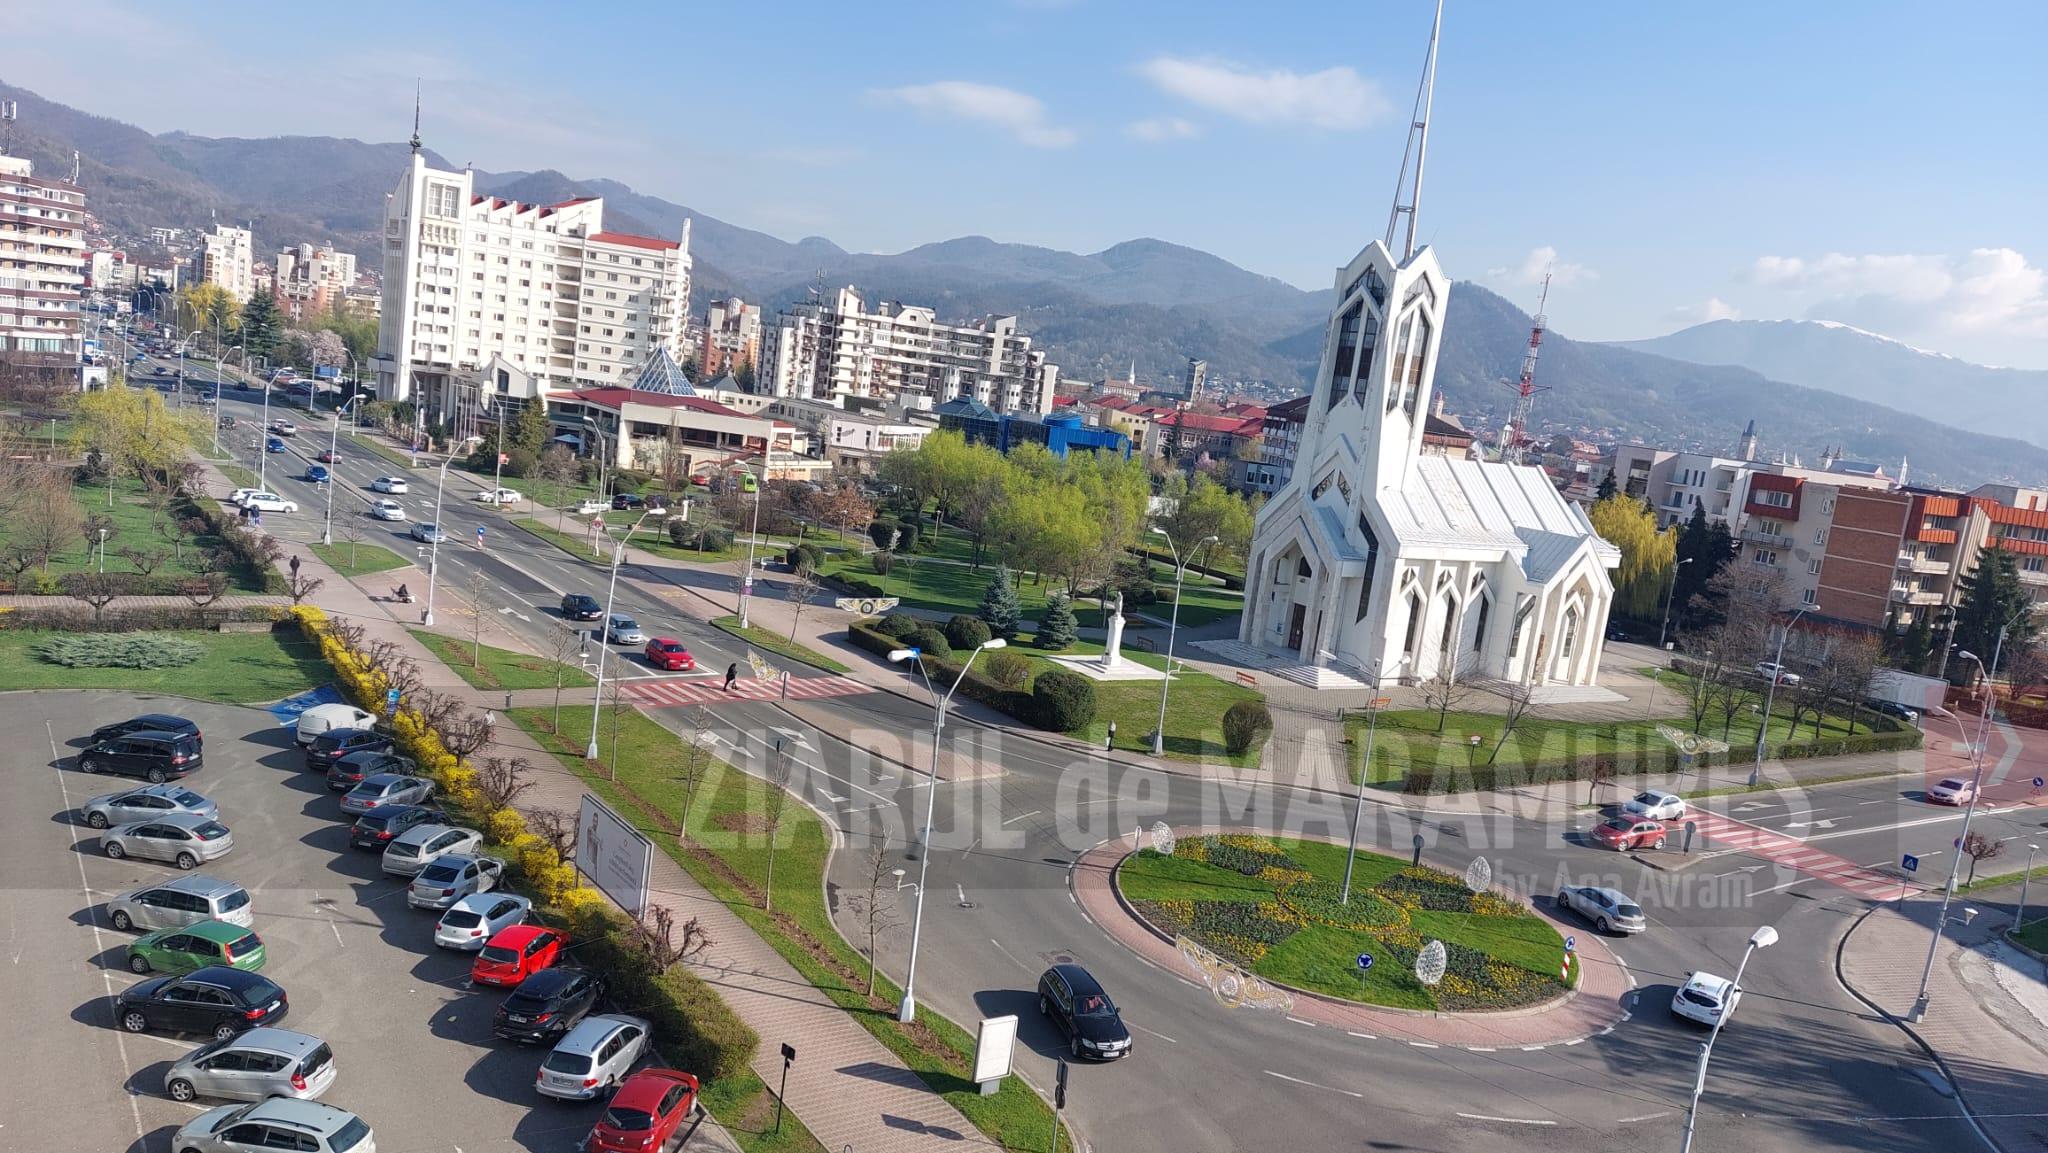 Nu staționați fără tichet în parcările publice cu plată din Baia Mare. Peste 140 de șoferi înștiințați de polițiștii locali